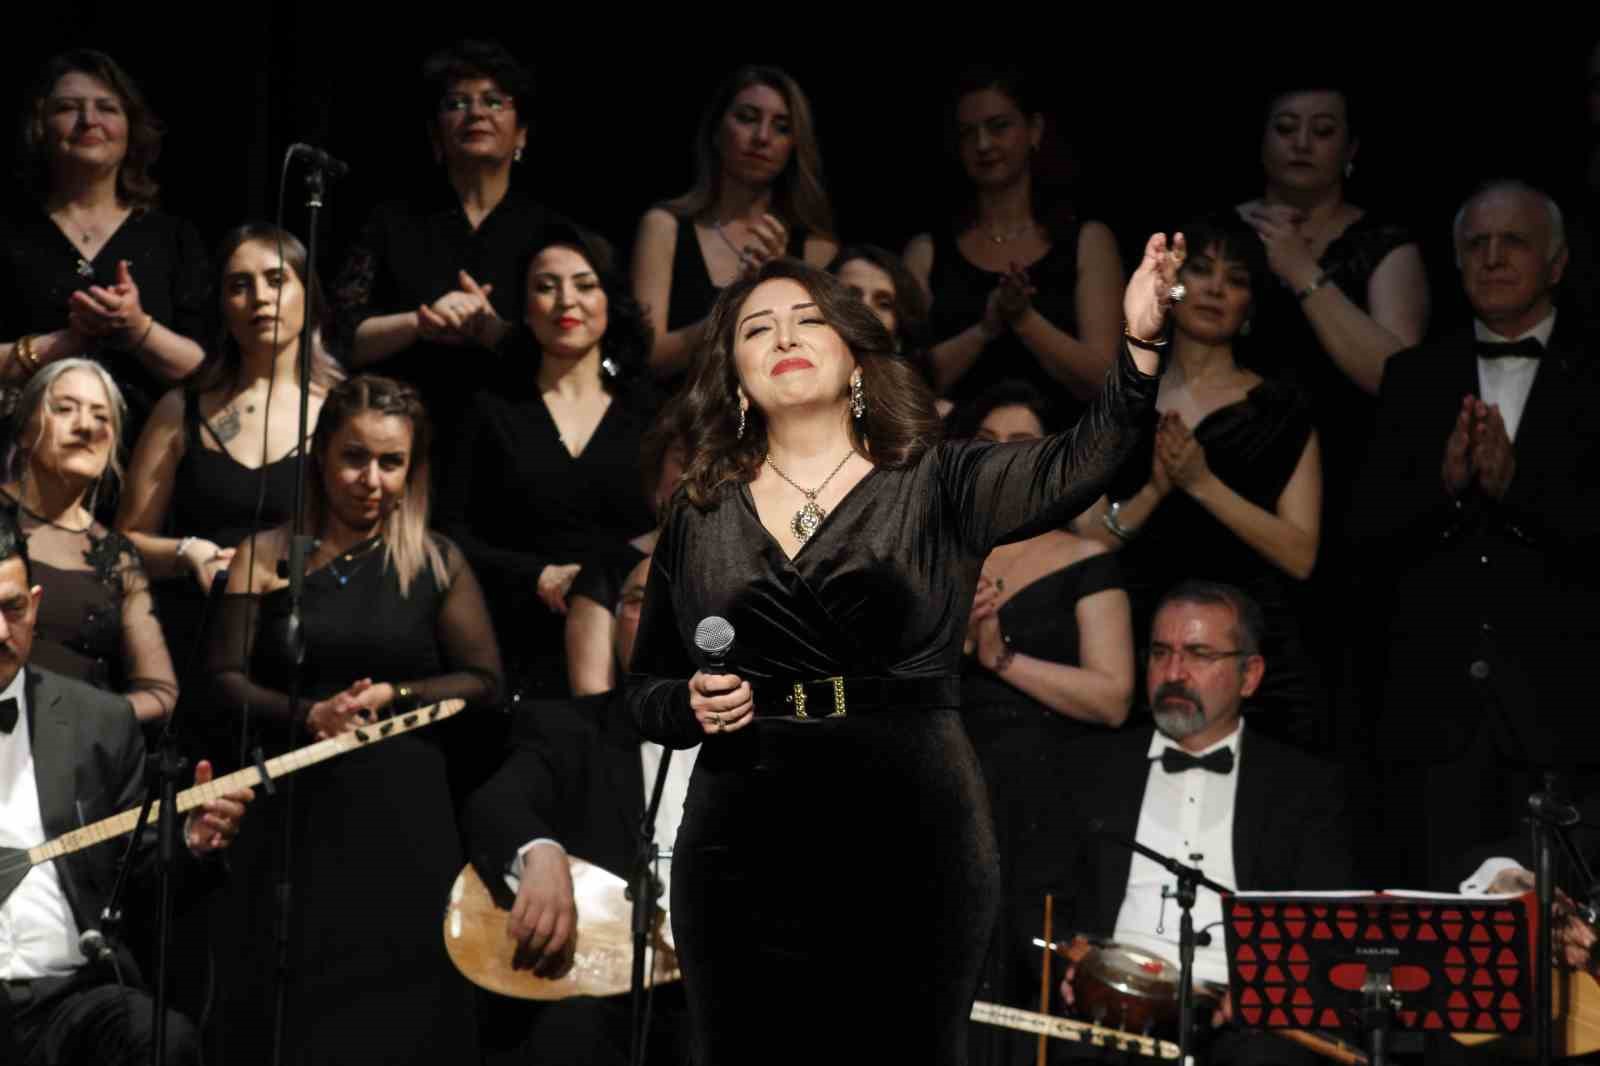 Odunpazarı Halk Eğitim Merkezi Türk Halk Müziği 50. Sanat Yılı Konseri yoğun ilgi gördü